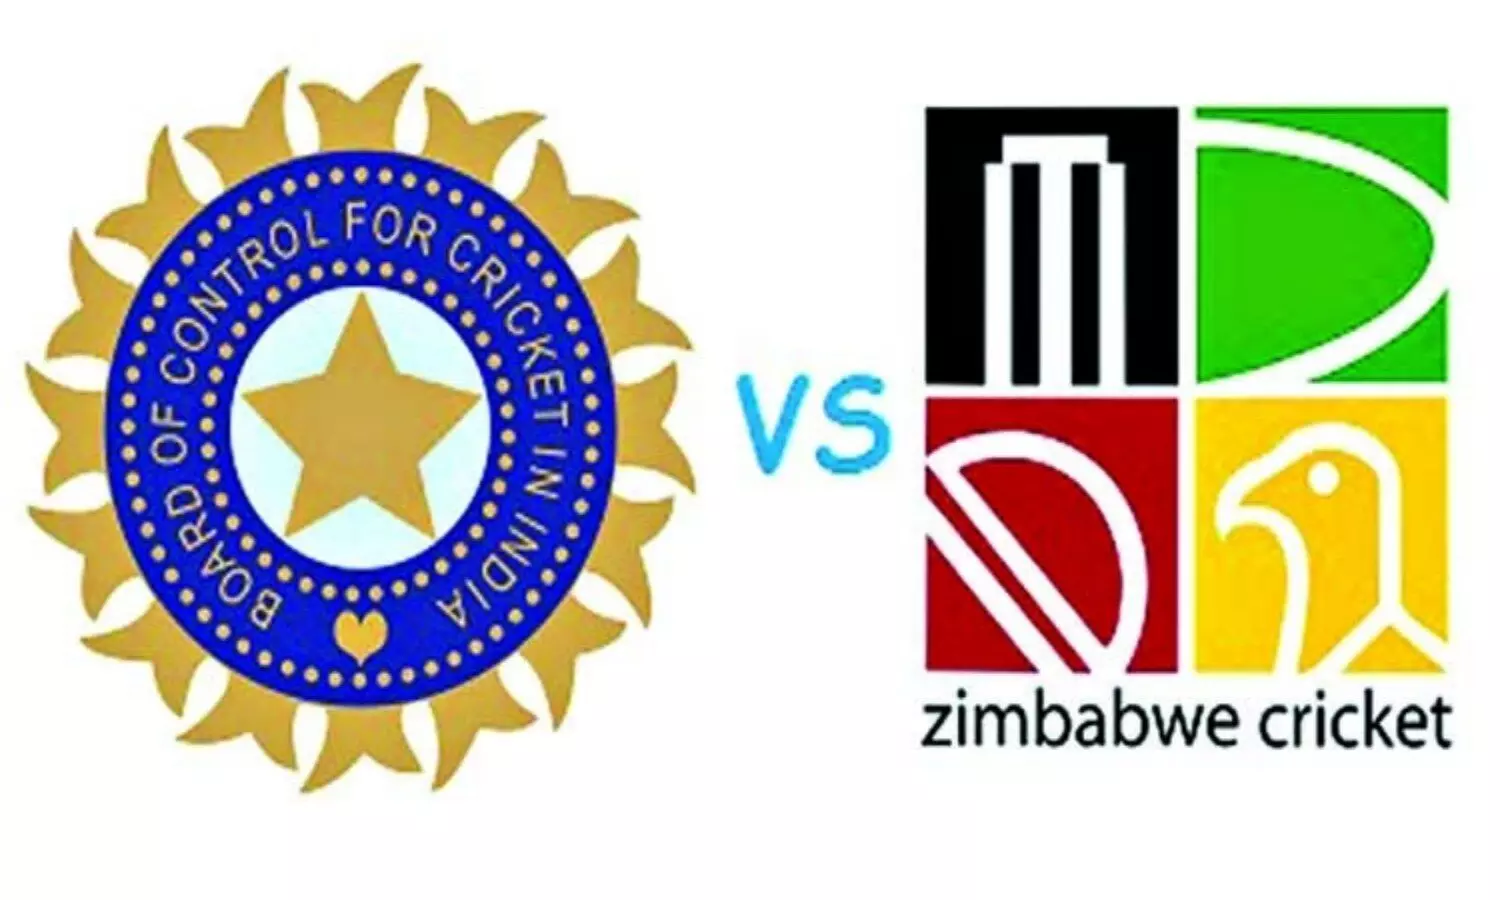 IND vs ZIM ODI Series